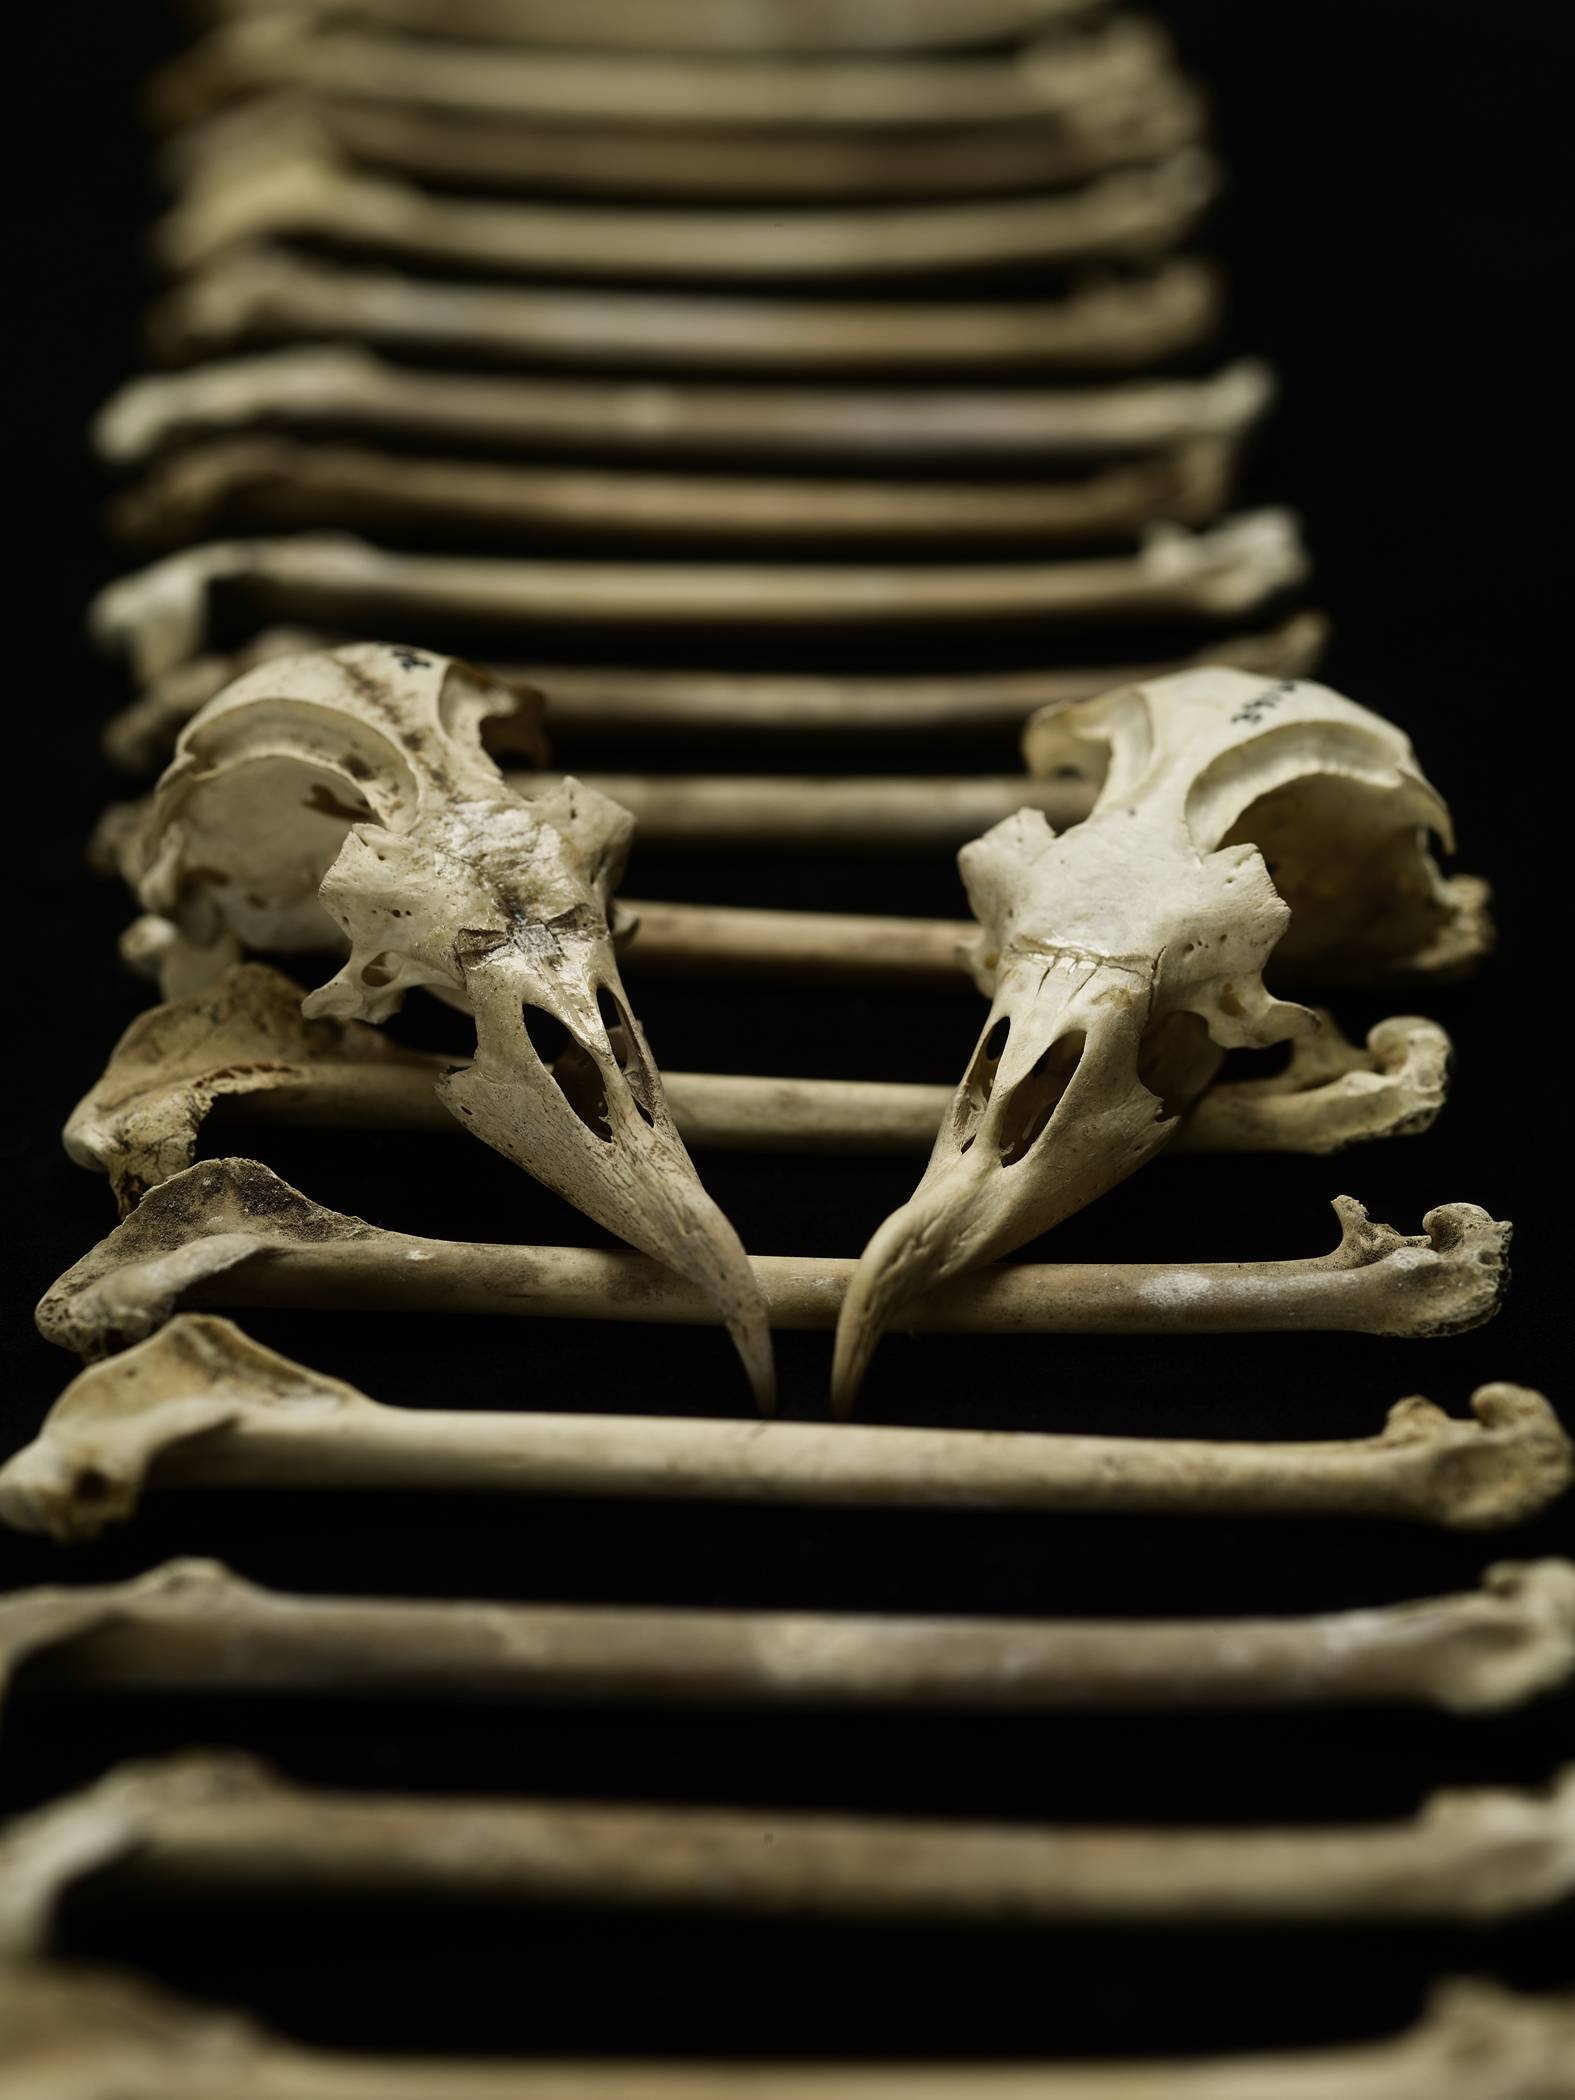 Des chercheurs ont récolté 17.000 ossements de pétrels des Hawaï et&nbsp;ont étudié leur composition chimique. Ils ont ainsi pu déterminer l'évolution du régime alimentaire de ces oiseaux marins sur 4.000 ans d'histoire. ©&nbsp;Brittany Hance